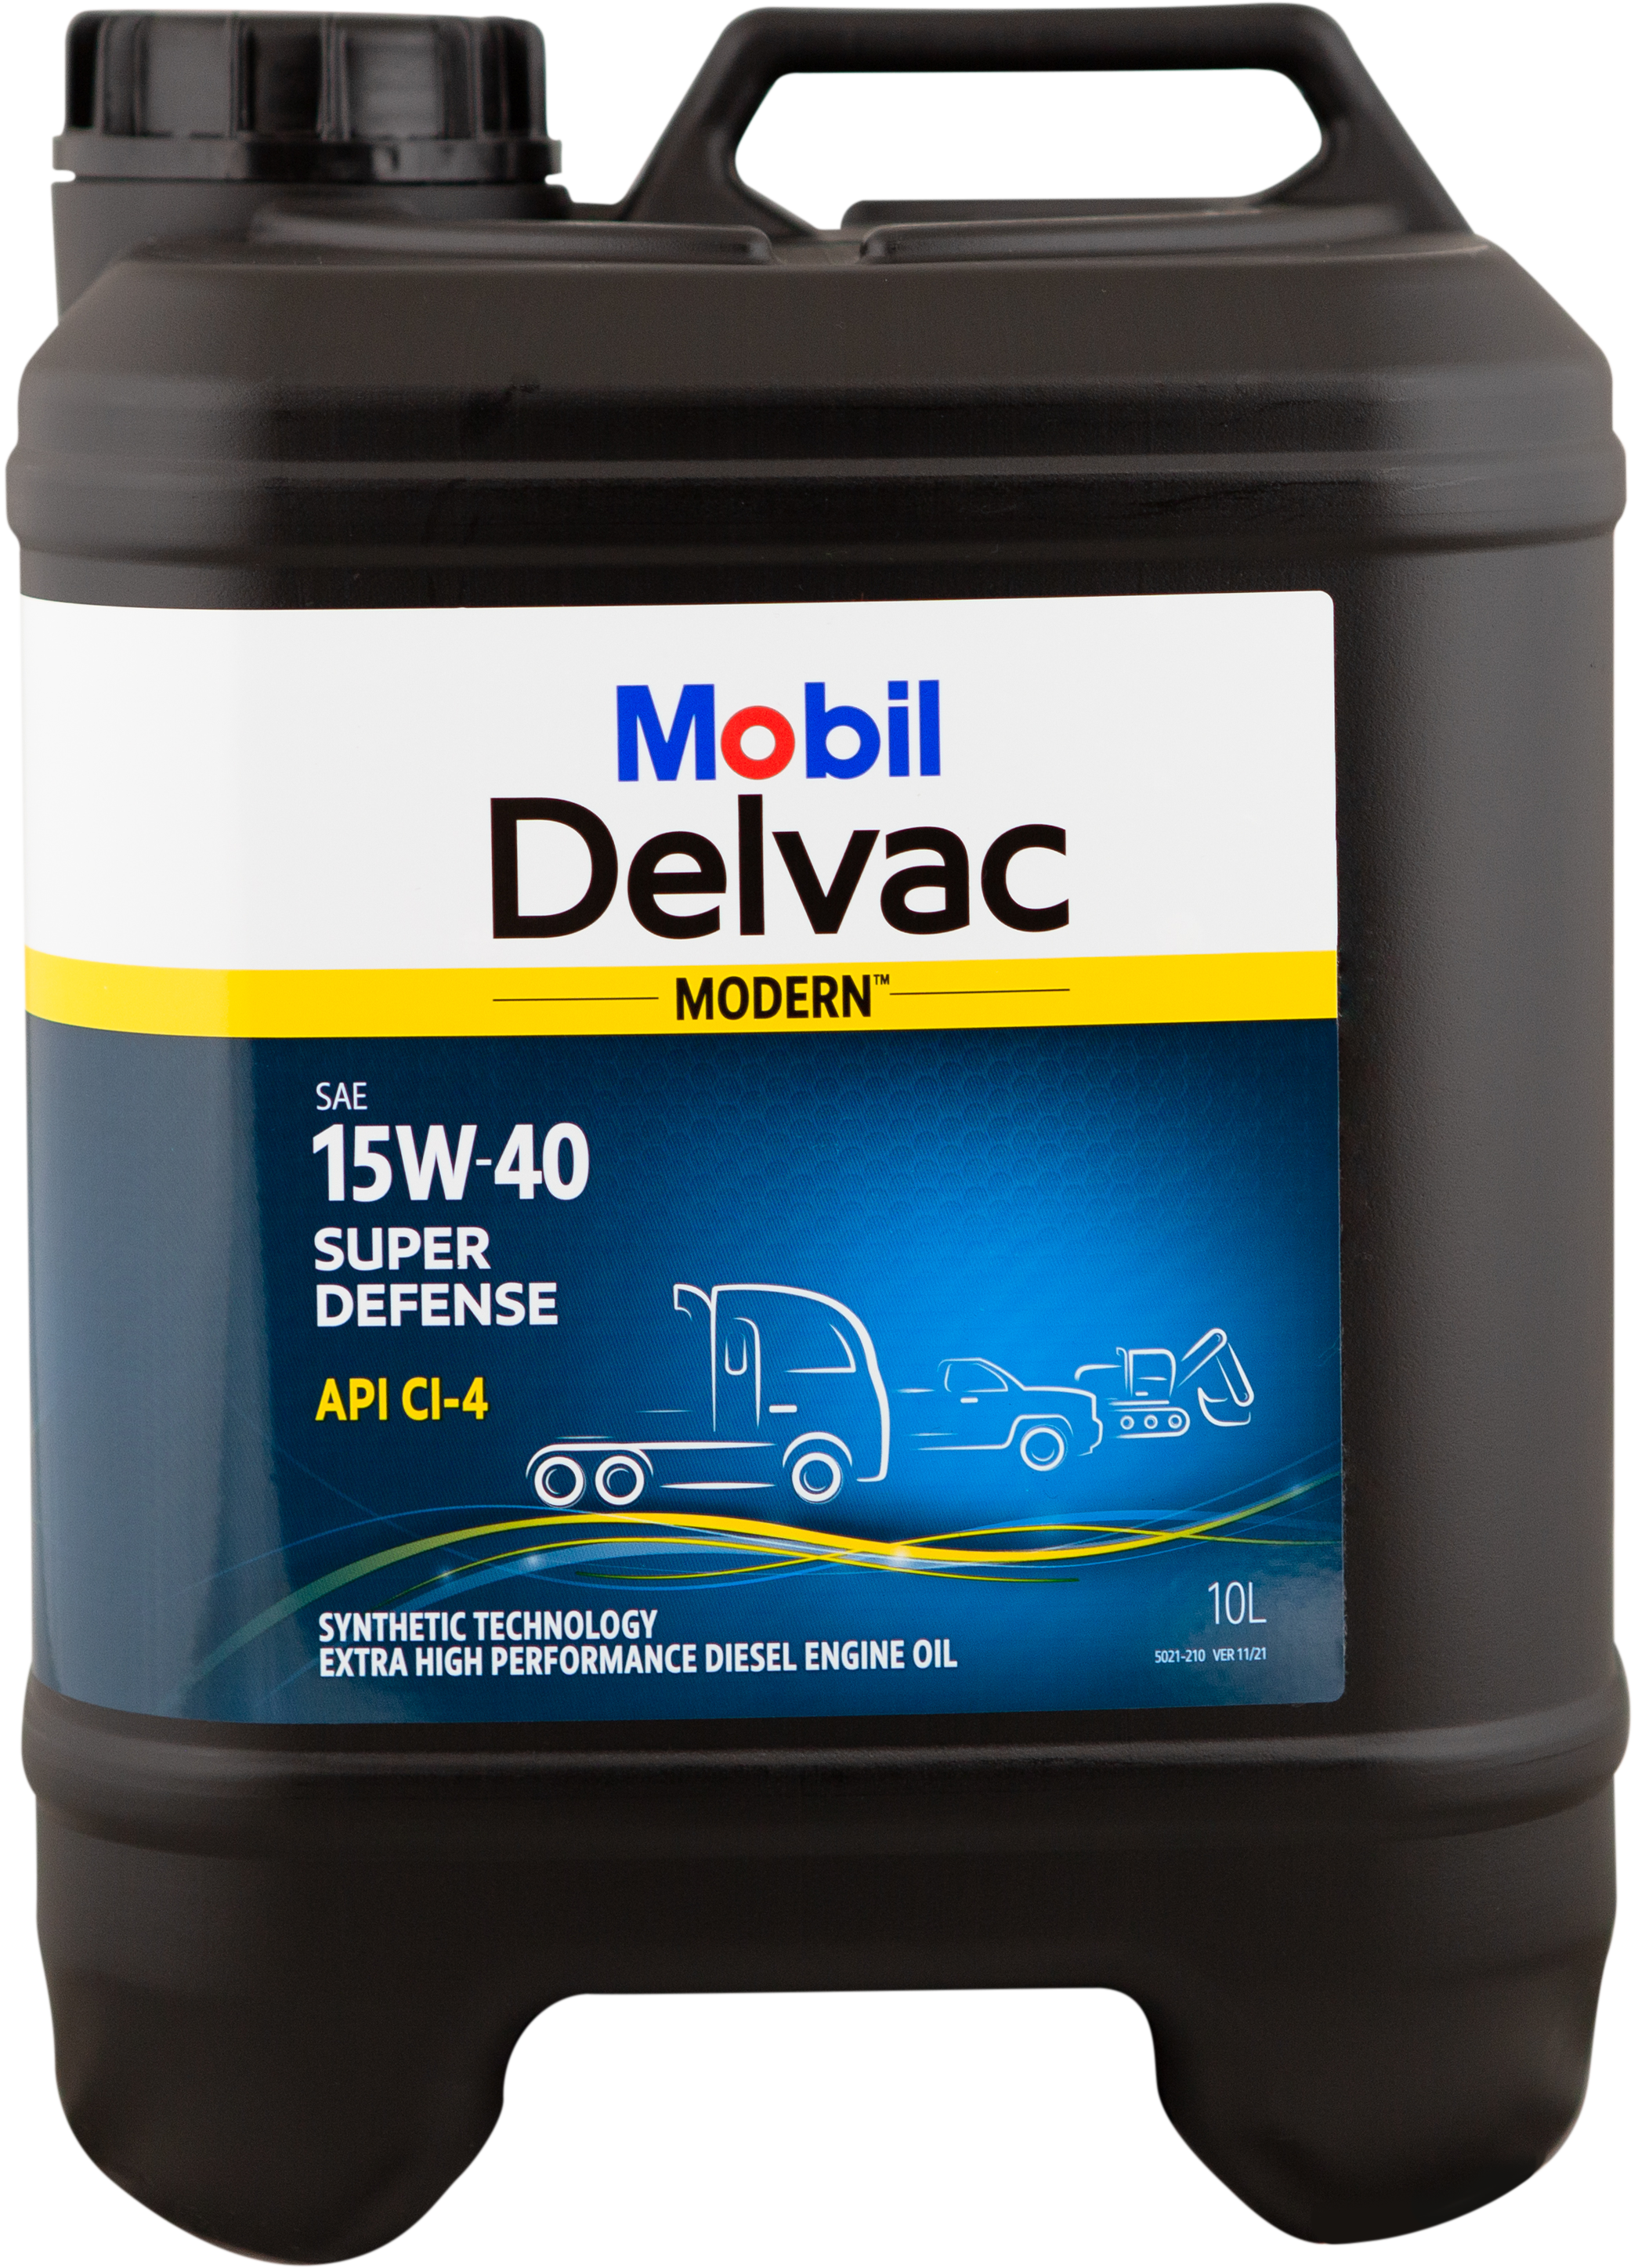 Mobil Delvac Modern 15W-40 SUPER DEFENSE